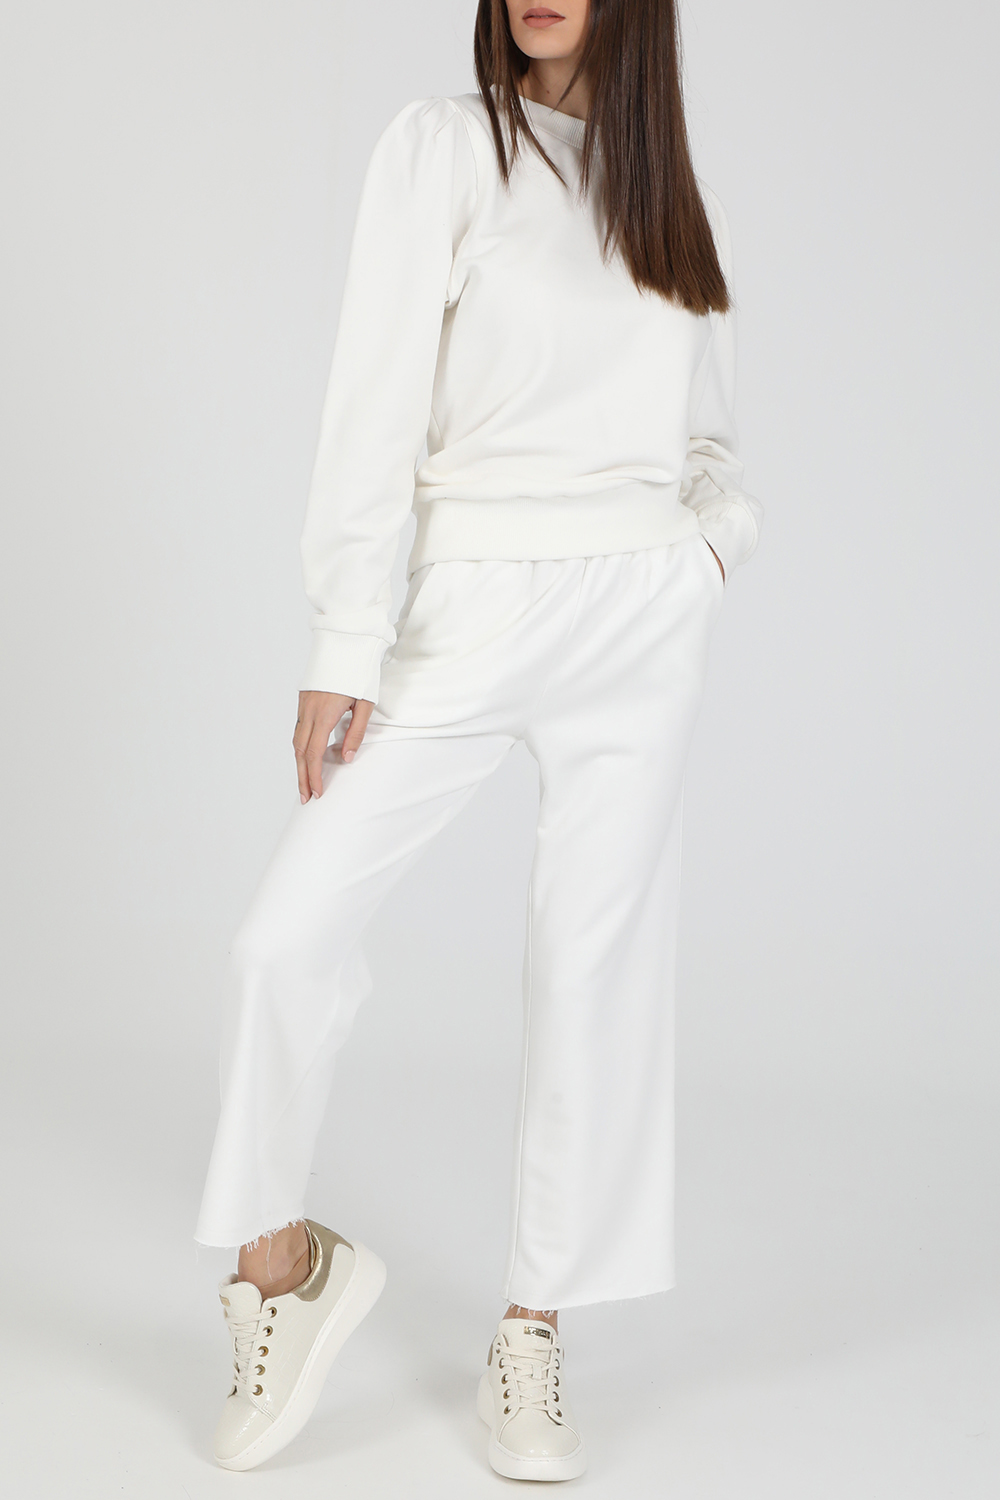 Γυναικεία/Ρούχα/Παντελόνια/Παντελόνες LA DOLLS - Γυναικείο παντελόνι LA DOLLS COSY λευκό